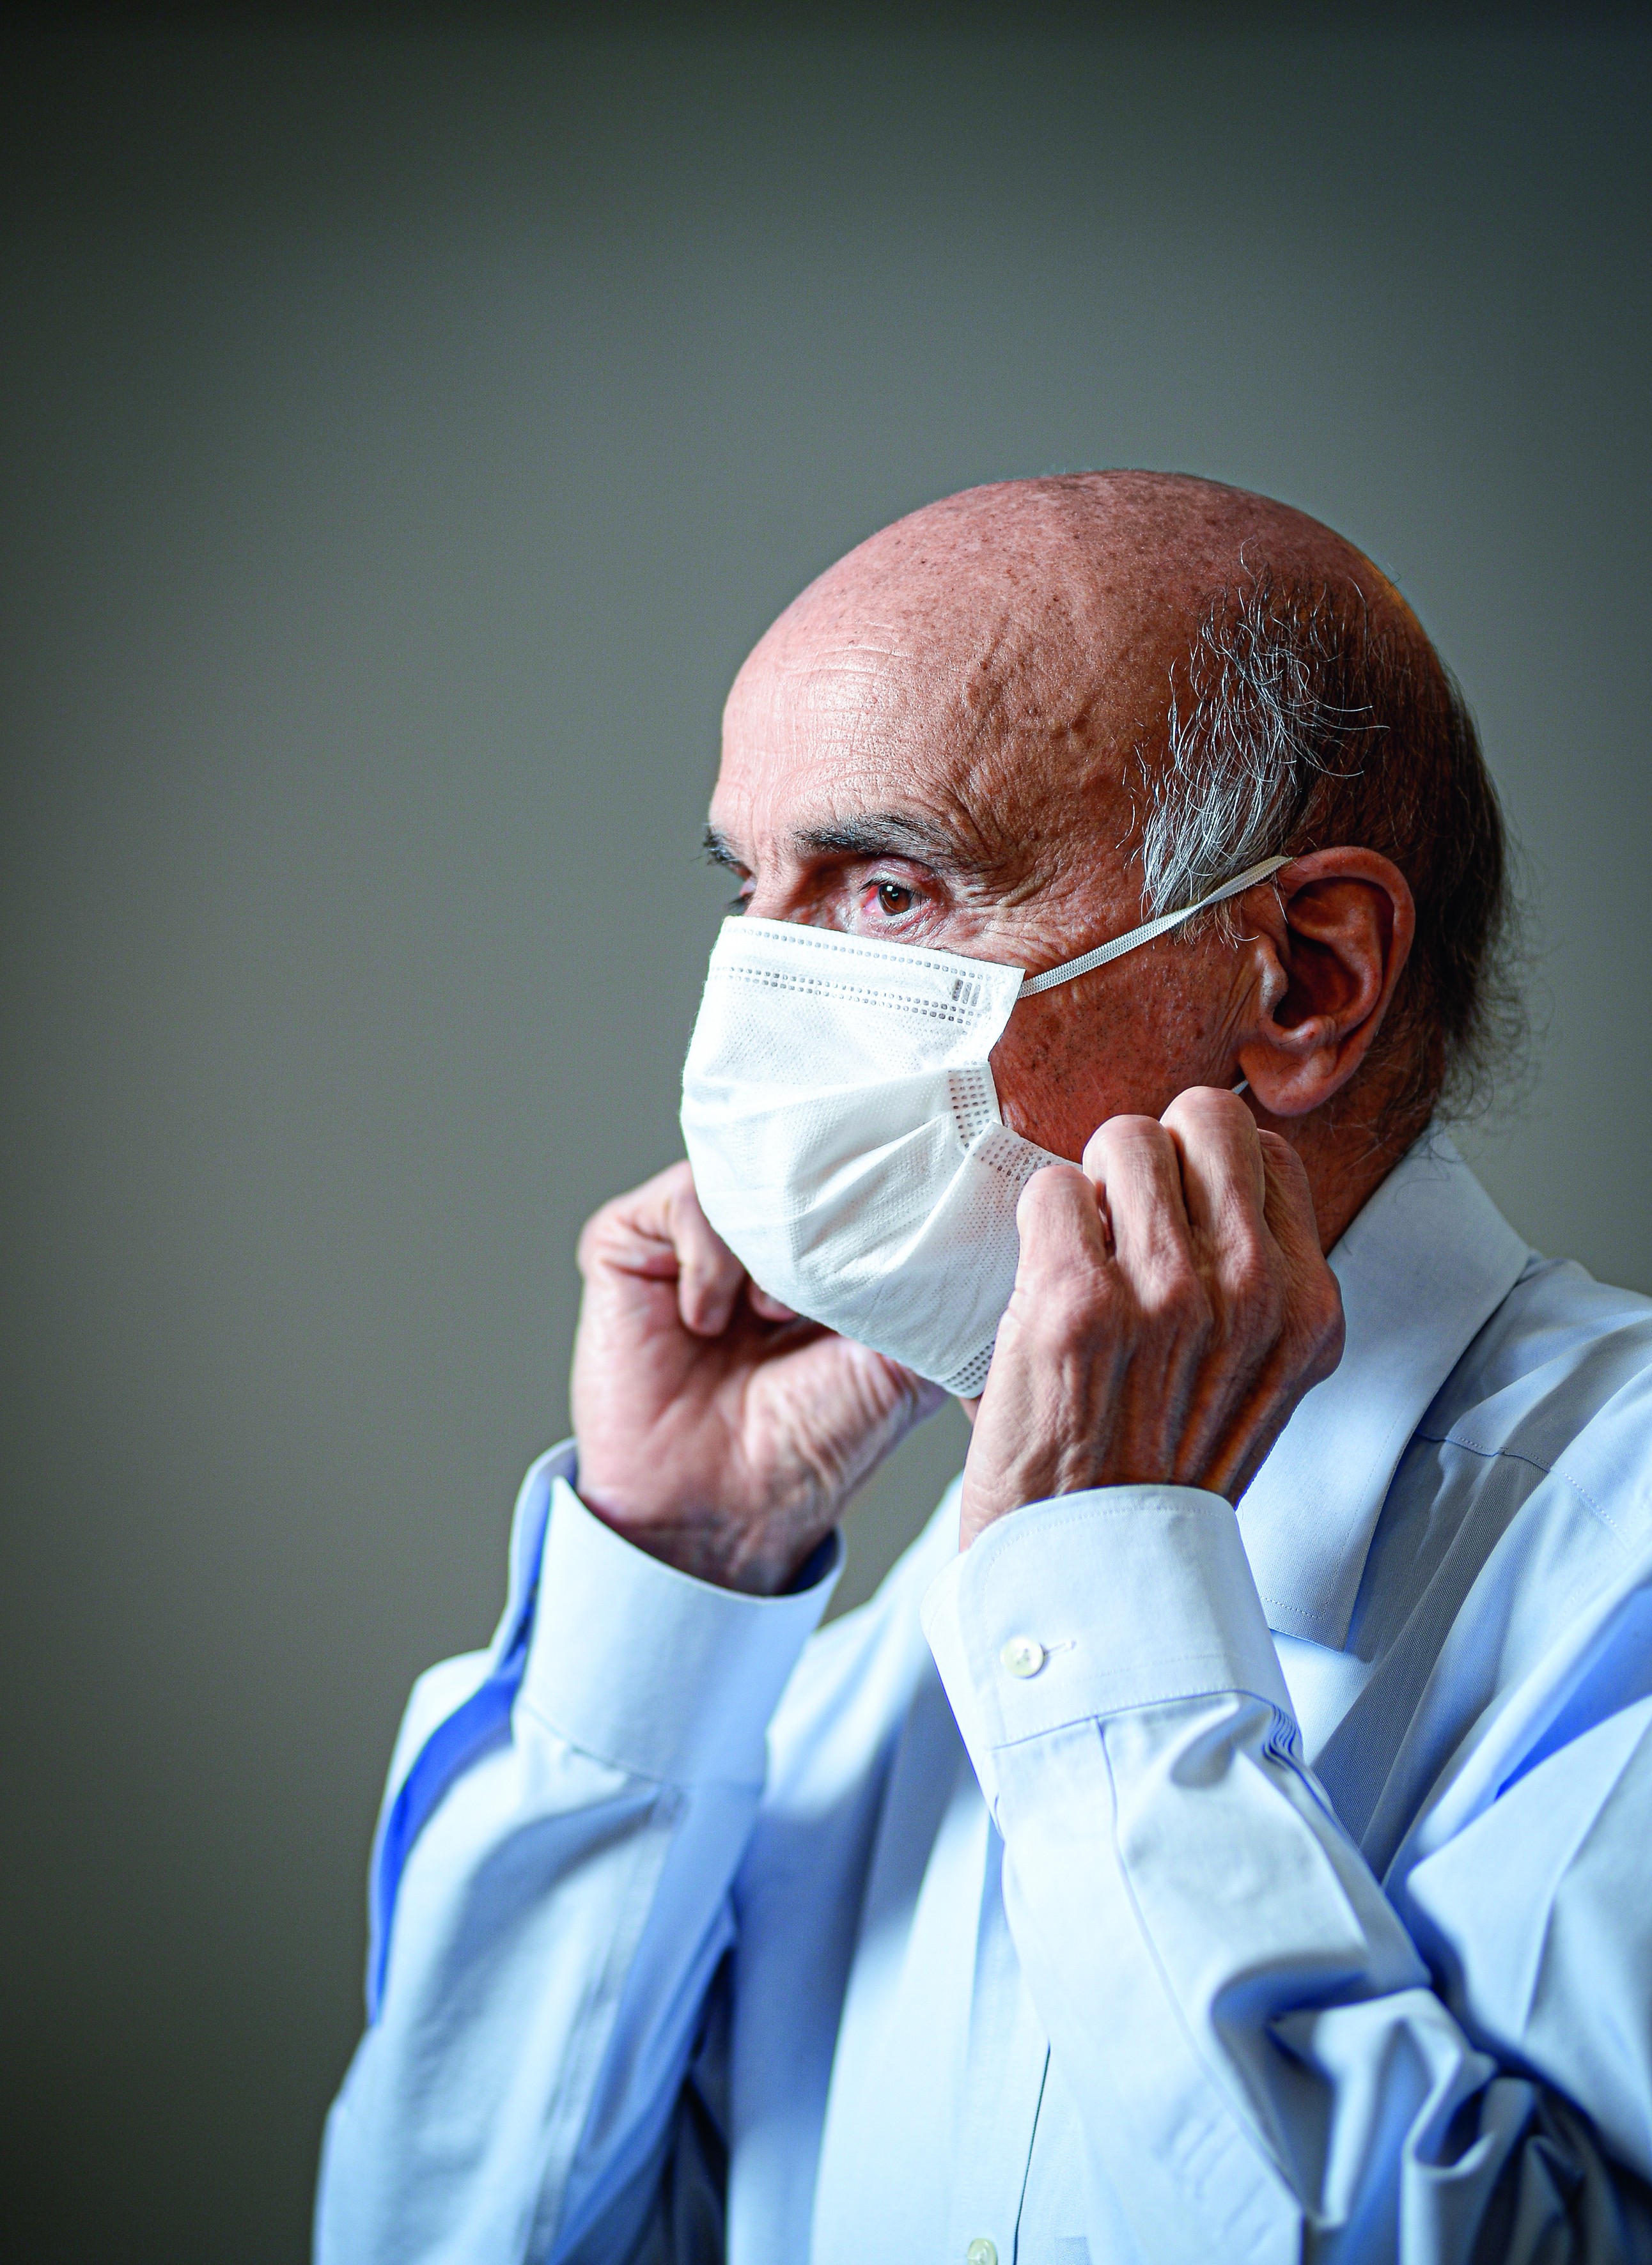 O oncologista Drauzio Varella vestindo máscara protetora contra a covid-19 (Foto: Marco Ankosqui/Ed. Globo)